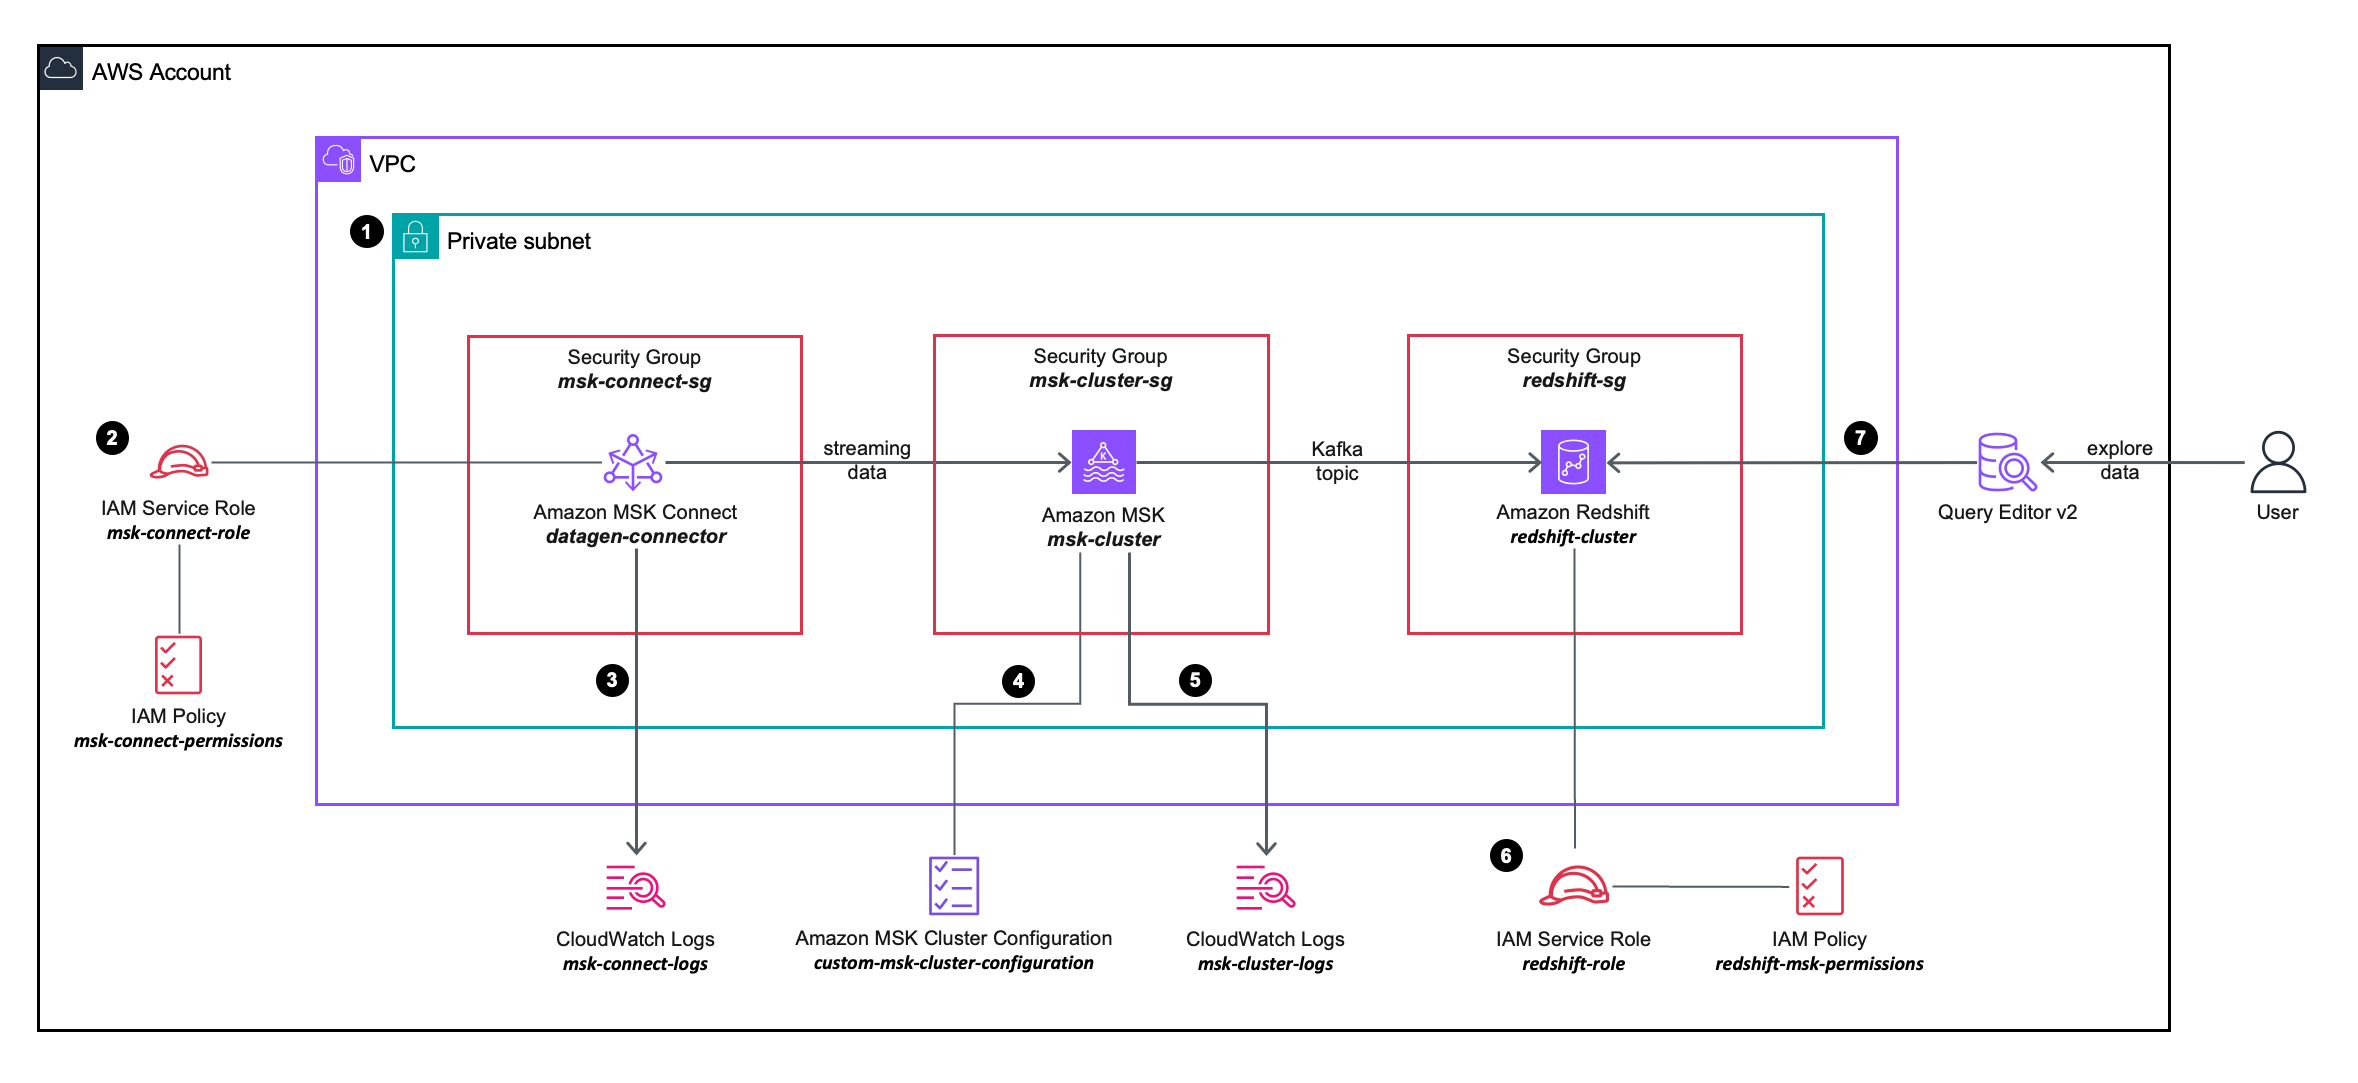 Diagrama de arquitectura de la solución que describe con más detalle la configuración e integración de los servicios de AWS que utilizará.